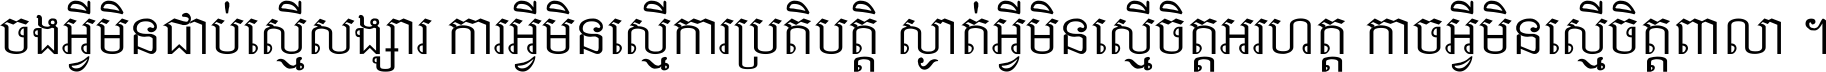 Khmer Chhay Text 3